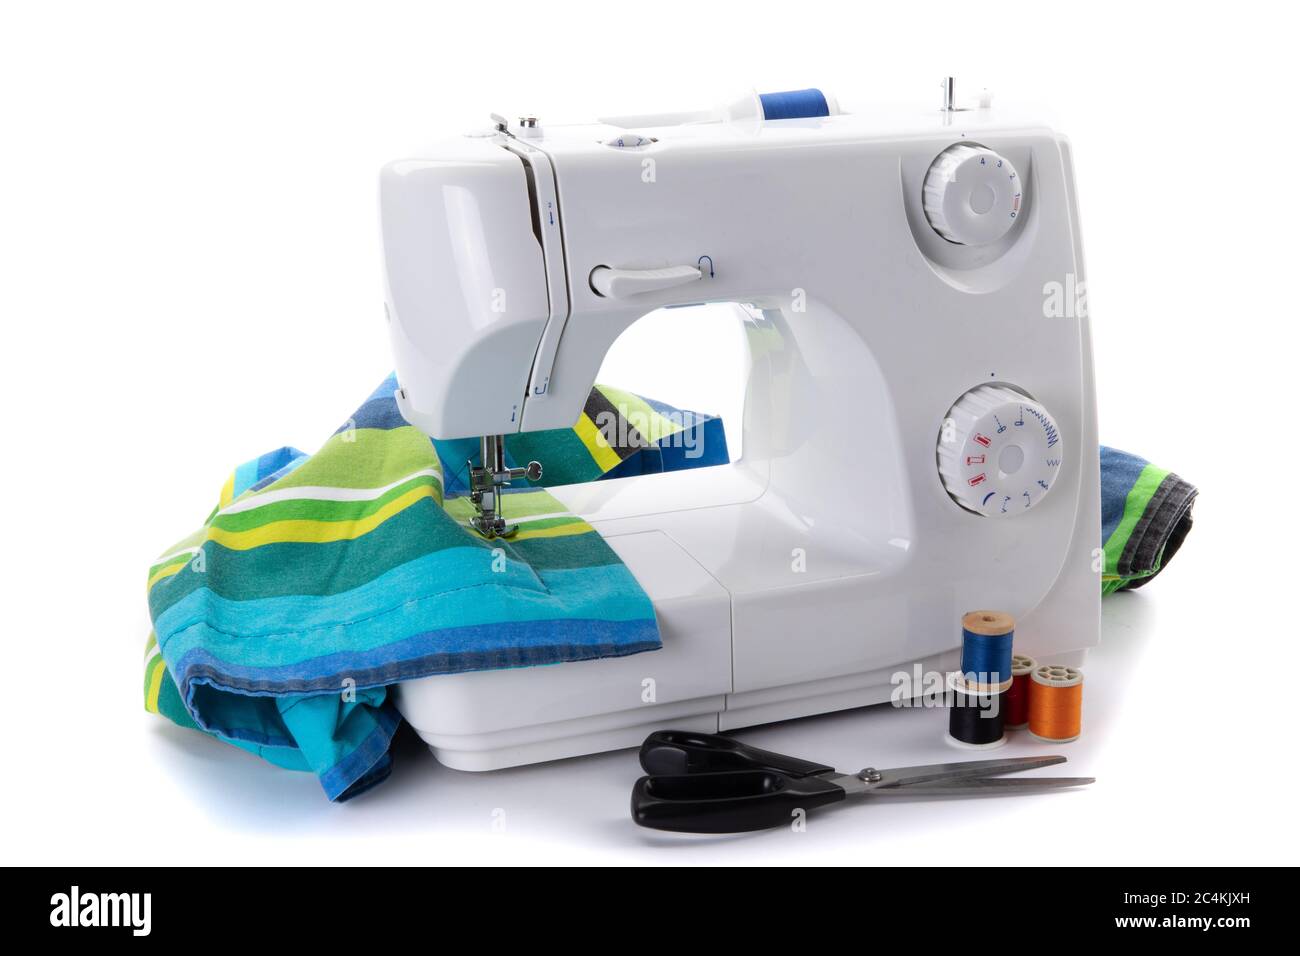 una máquina de coser eléctrica blanca cosiendo una costura en una